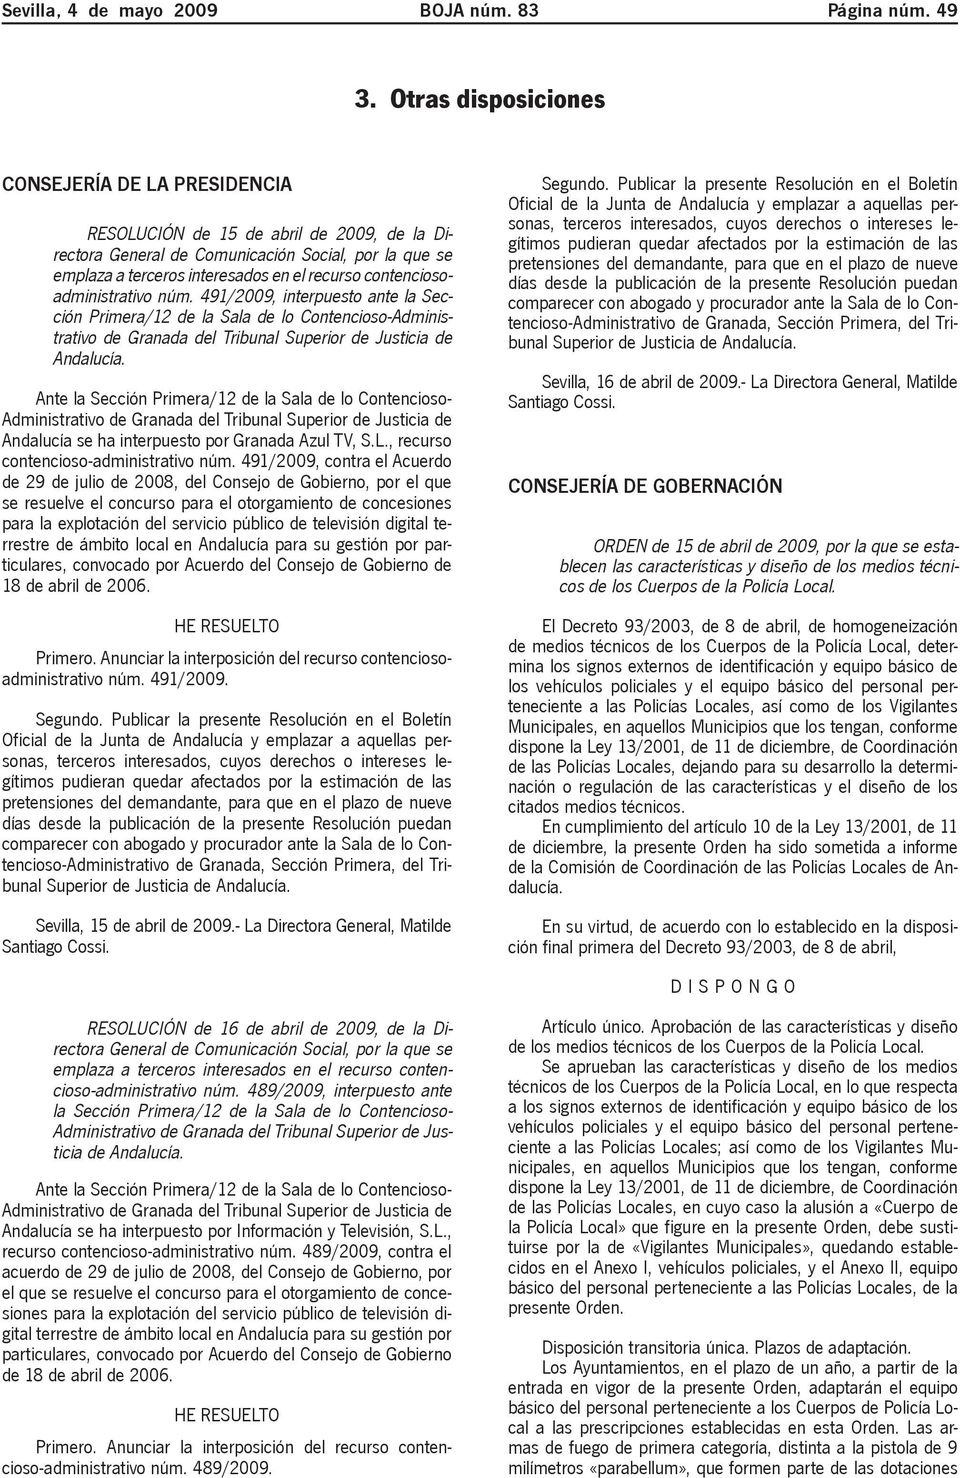 contenciosoadministrativo núm. 491/2009, interpuesto ante la Sección Primera/12 de la Sala de lo Contencioso-Administrativo de Granada del Tribunal Superior de Justicia de Andalucía.